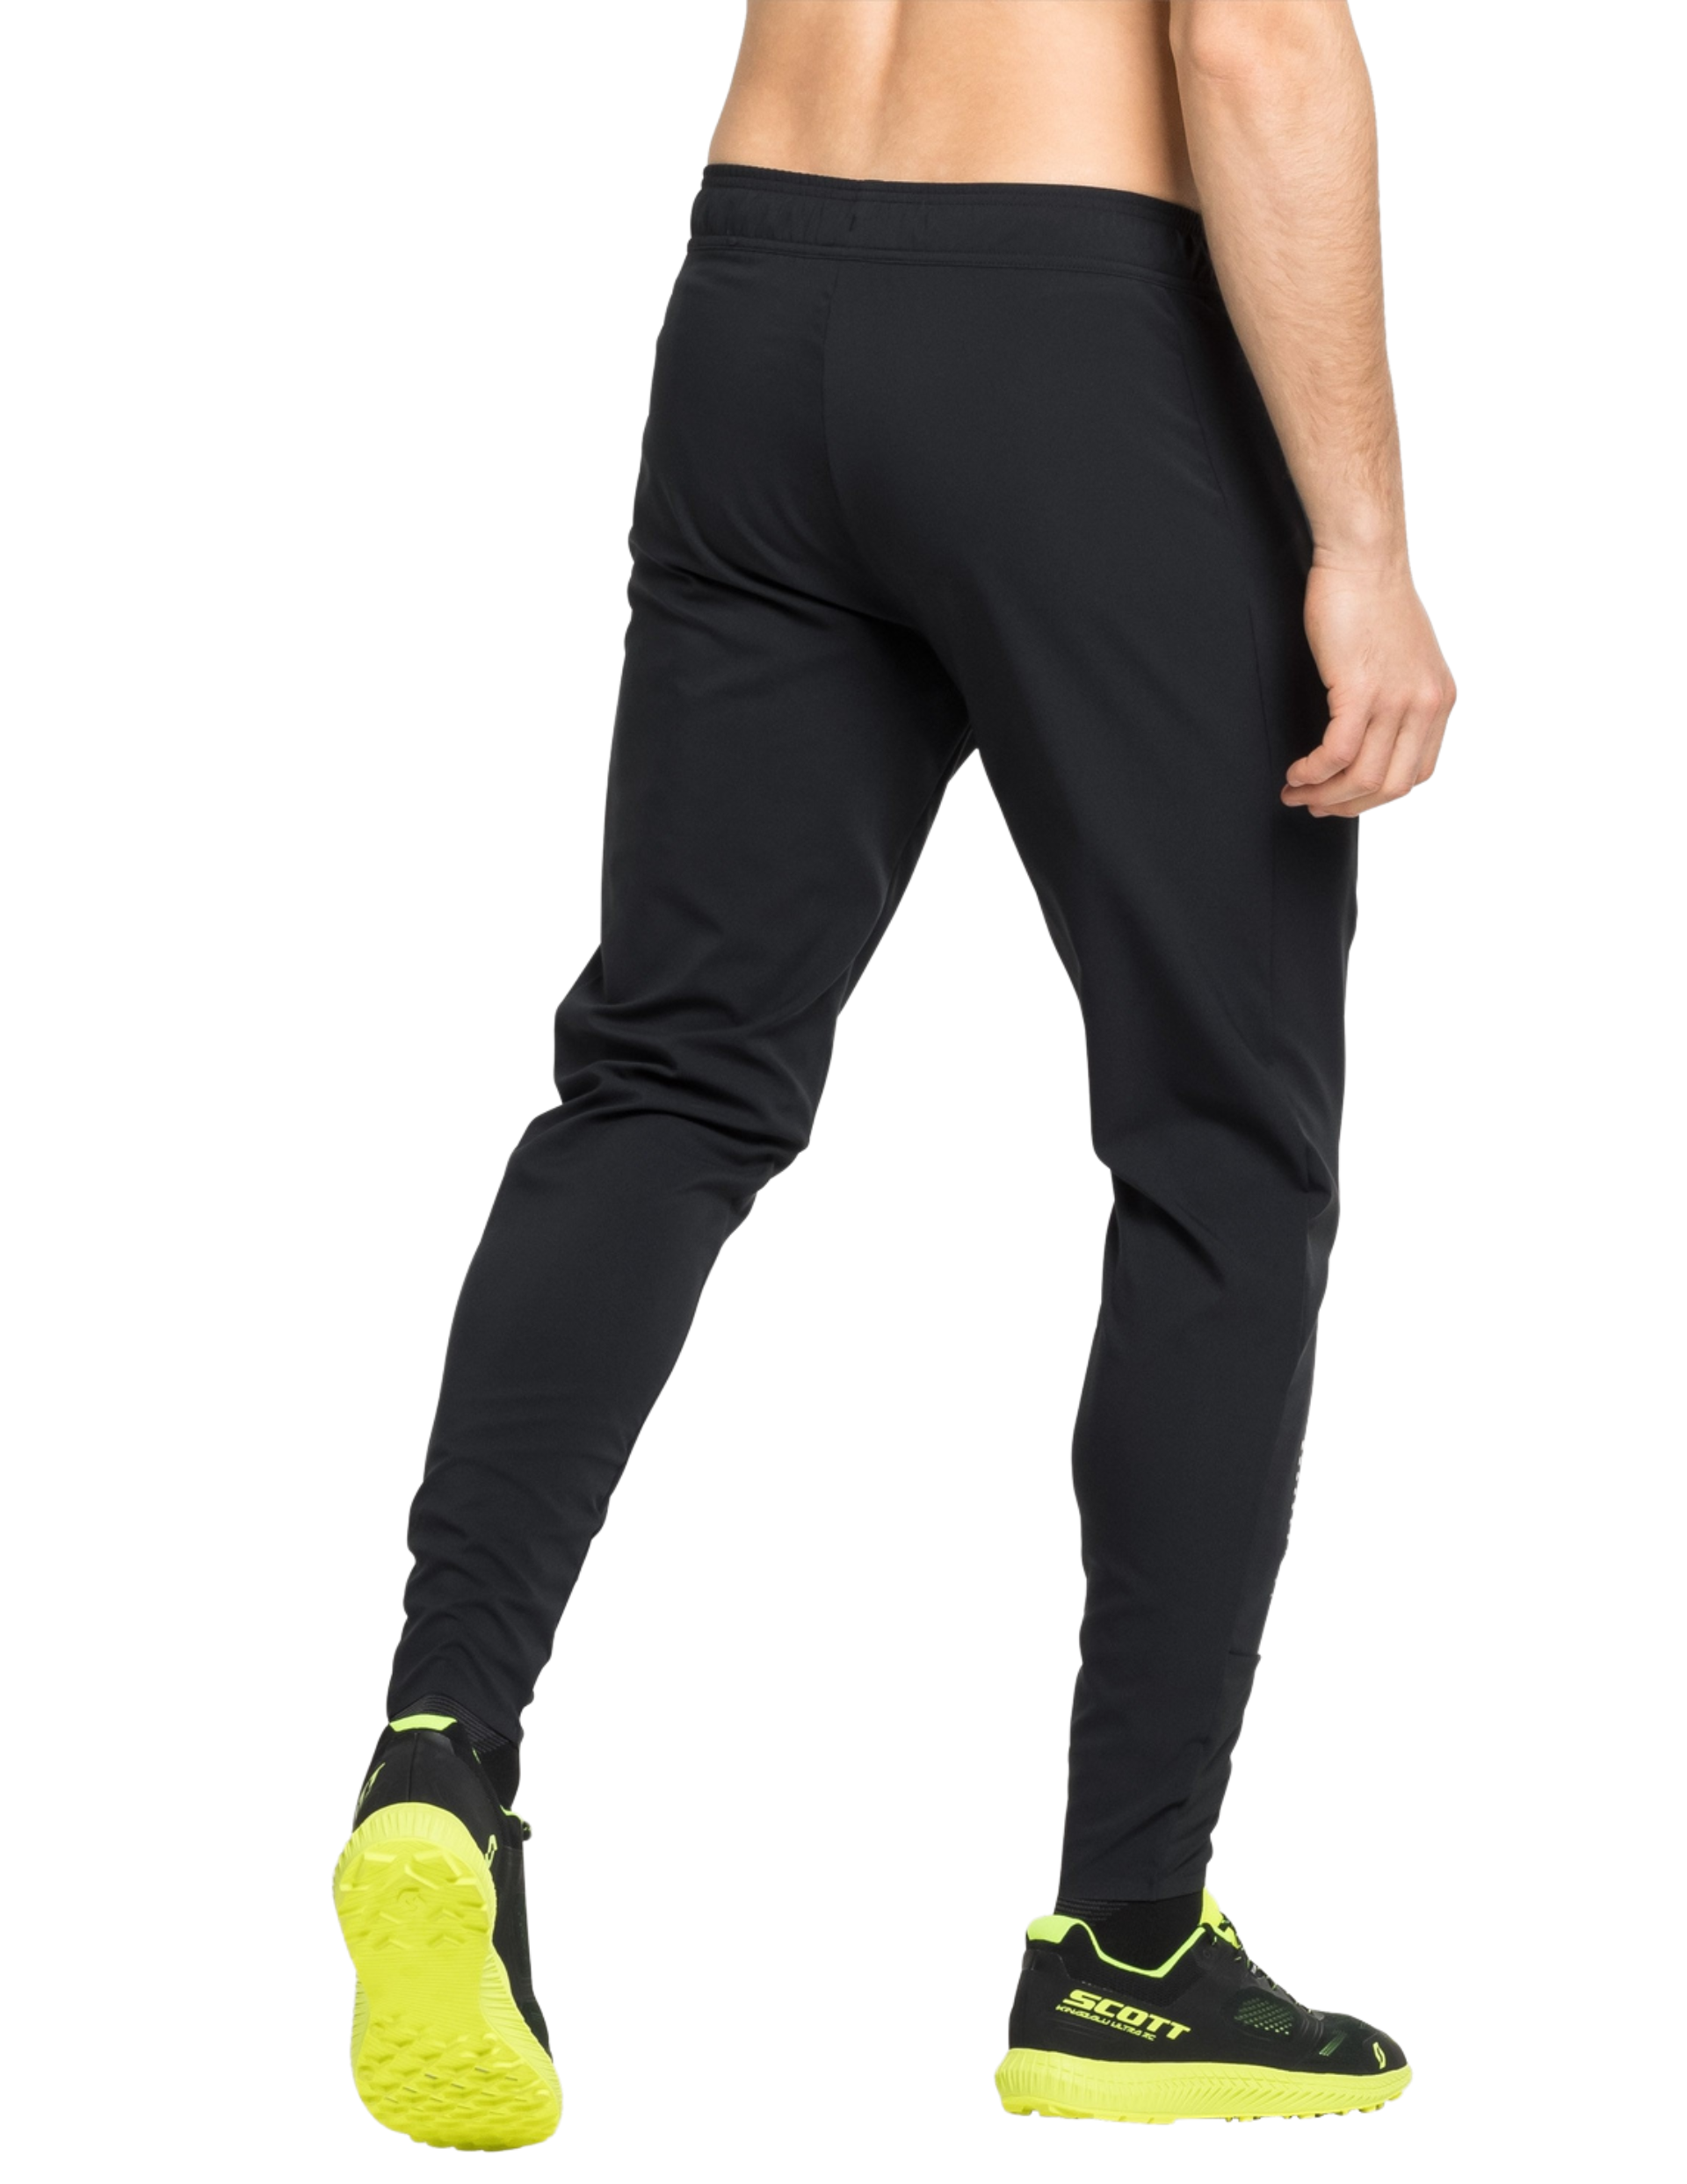 Pantalon de Running Odlo Zeroweight pour Homme : coupe semi-ajustée pour un mix idéal entre confort et liberté de mouvement